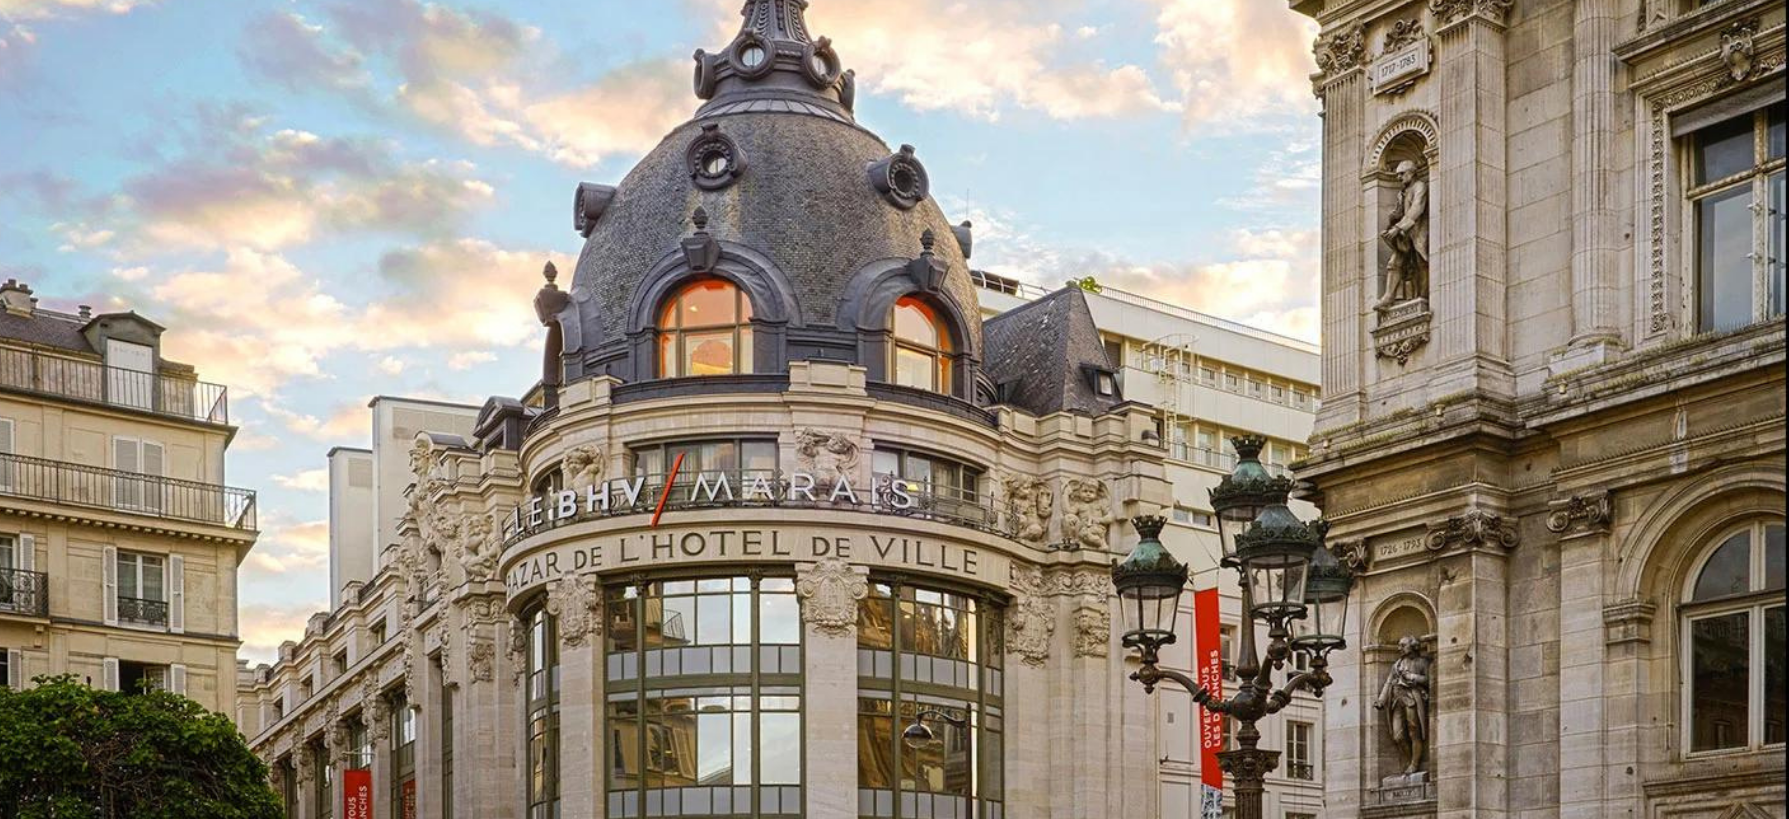 老佛爷百货集团出售旗下巴黎 BHV Marais 百货，集中精力和资源发展核心品牌